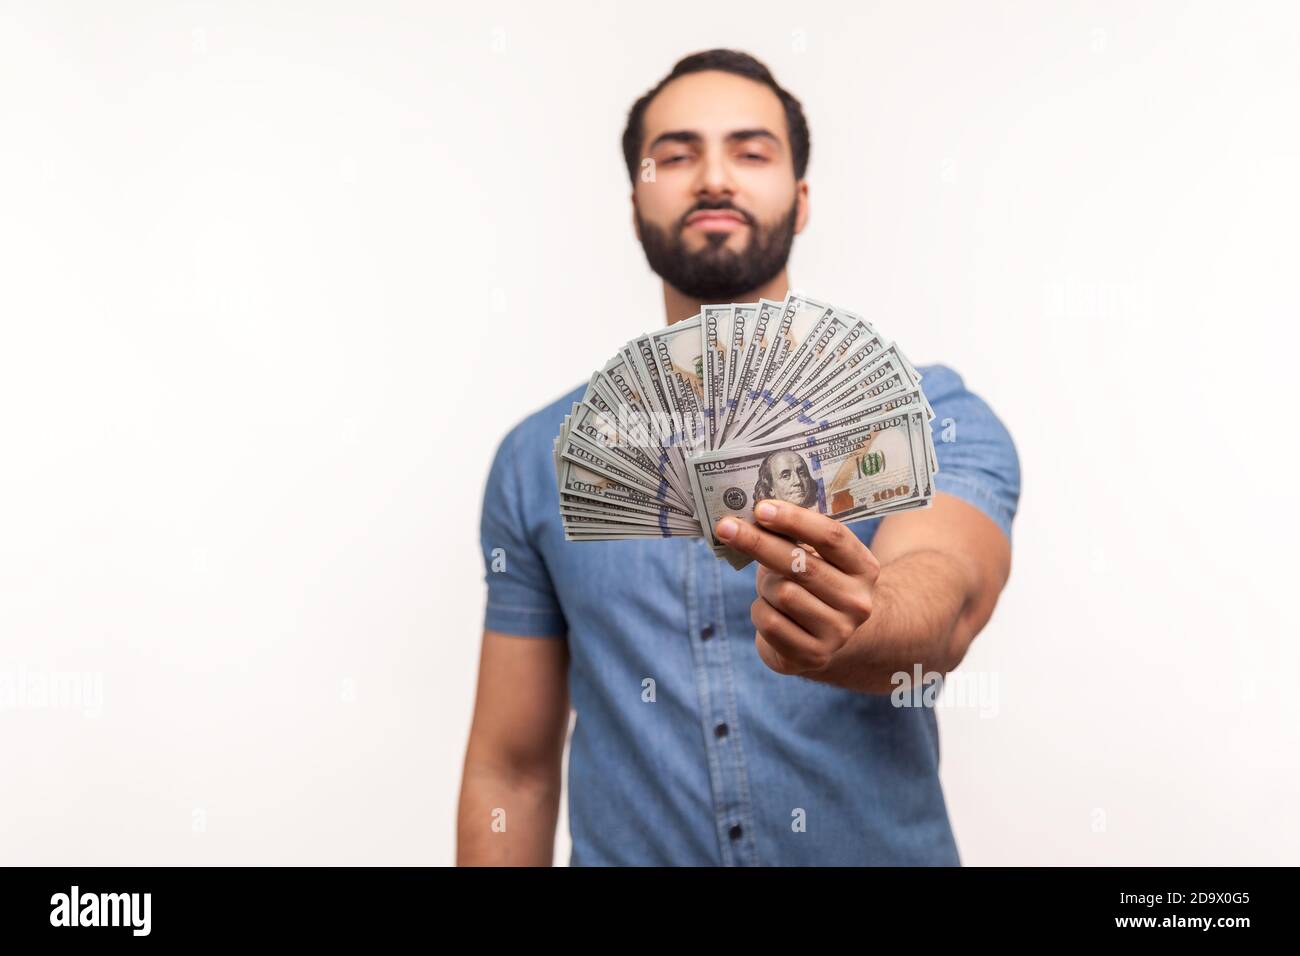 Homme riche et plein d'assurance avec une barbe en chemise bleue montrant des billets de dollars à l'appareil photo, se vantant avec le salaire, les investissements, le taux de prêt élevé, le crédit. Indo Banque D'Images